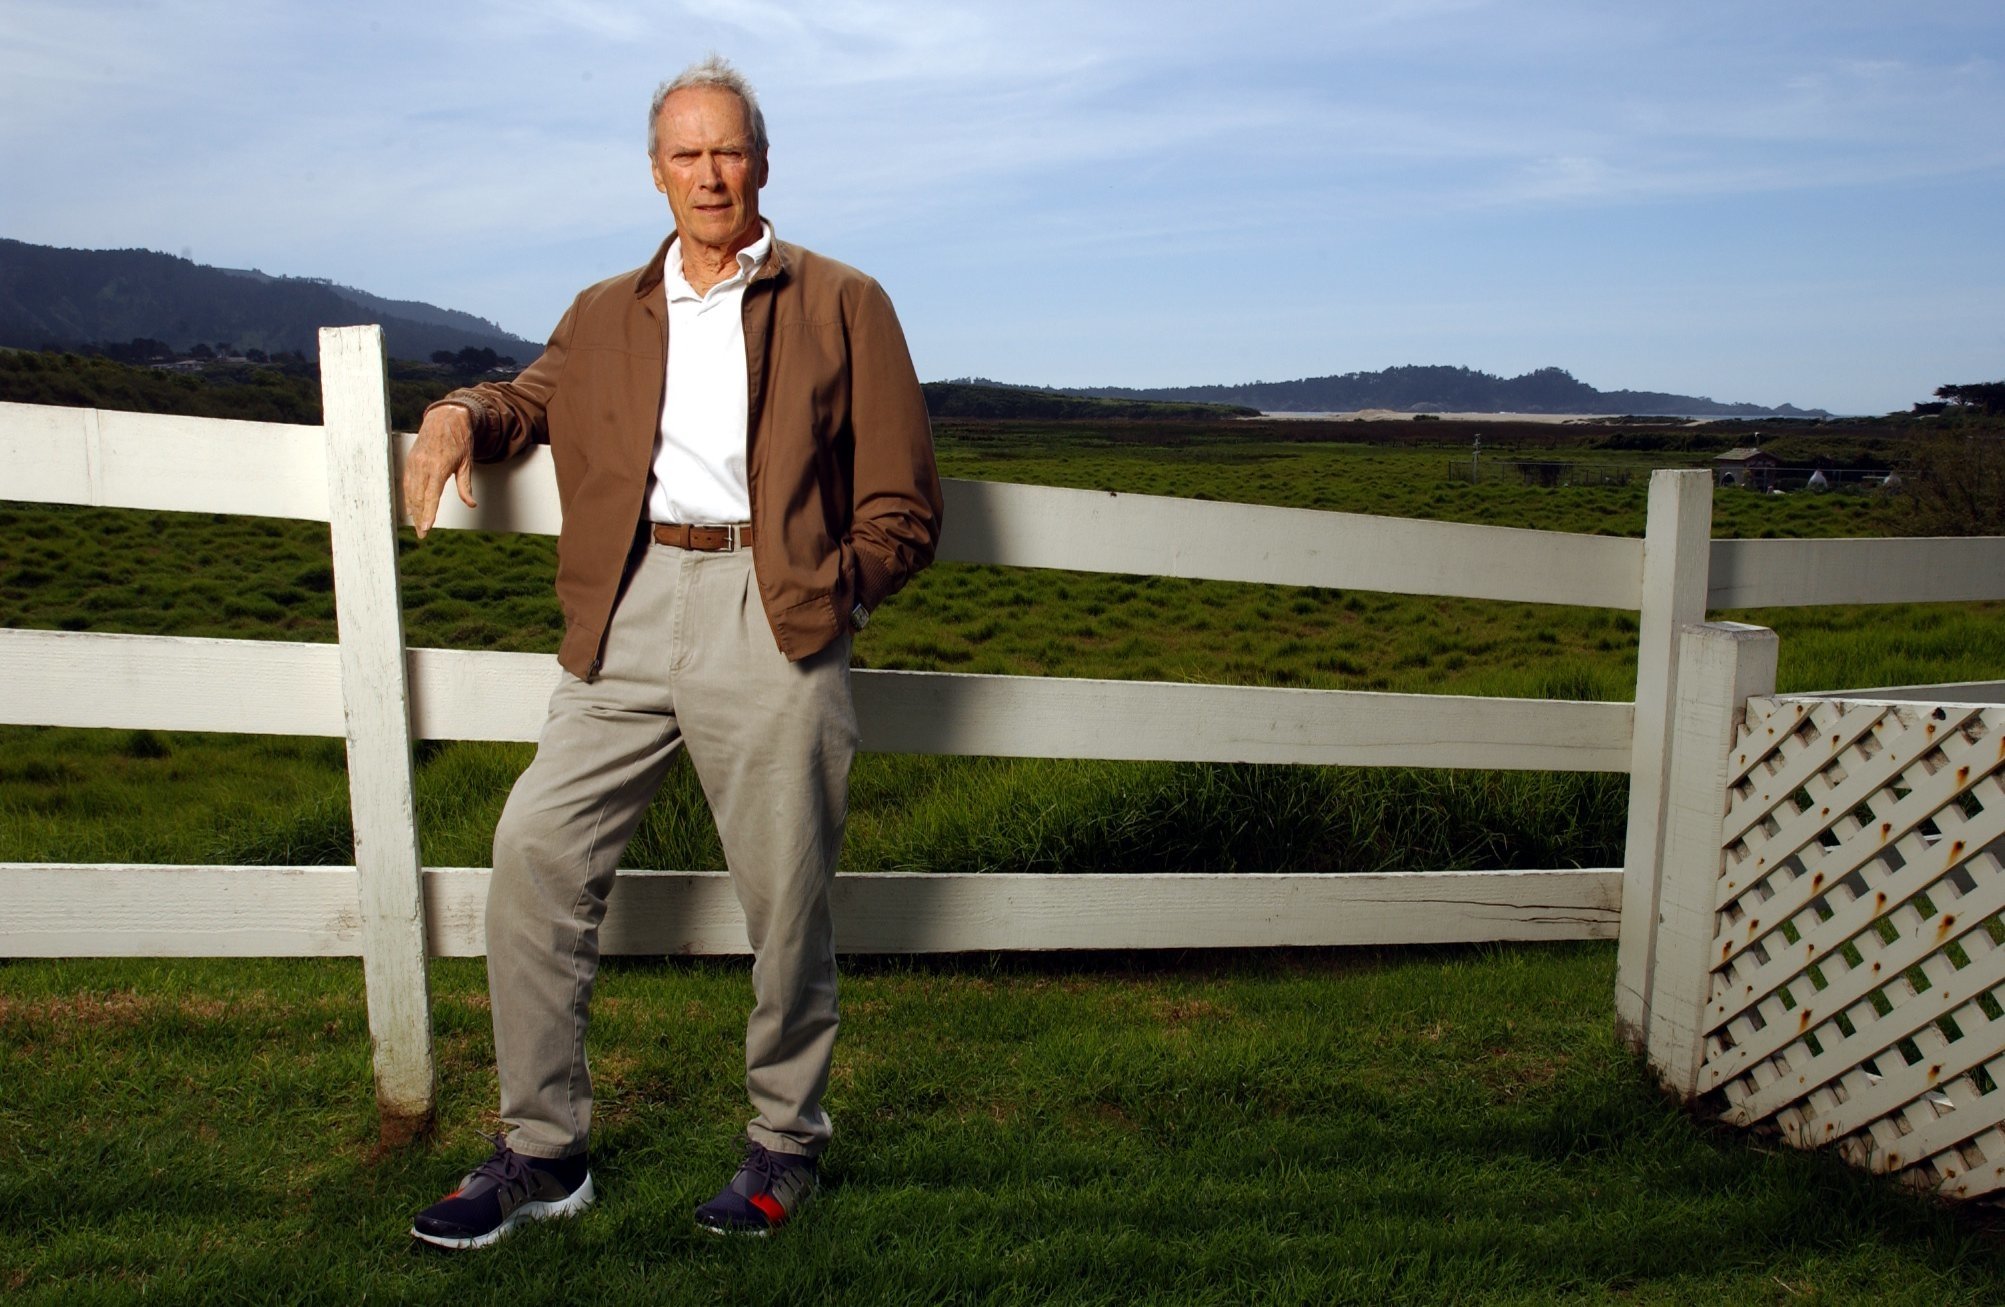 L'acteur Clint Eastwood dans son Mission Ranch Inn à Carmel. | Source : Getty Images